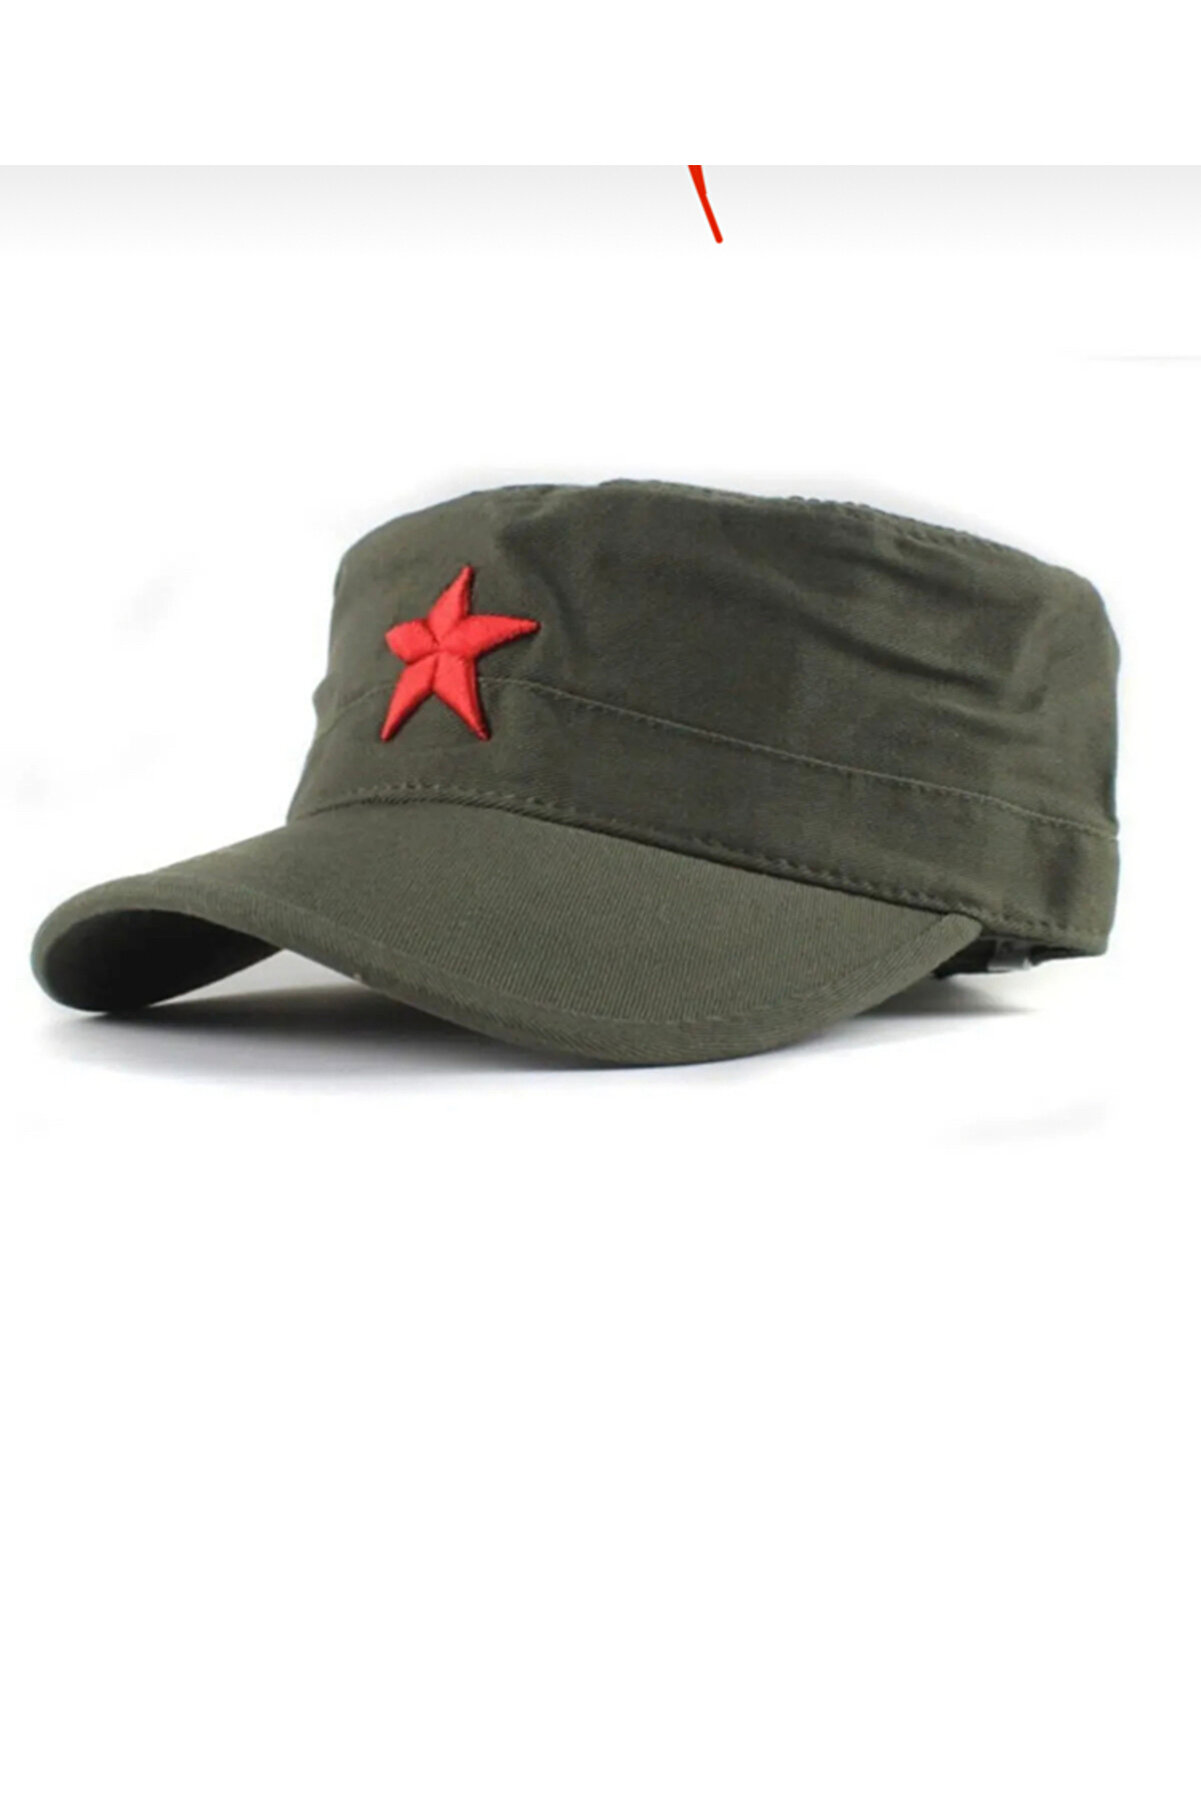 Köstebek Küba Fidel Castro Ernesto Che Guevara Yeşil Kızılyıldız Şapka